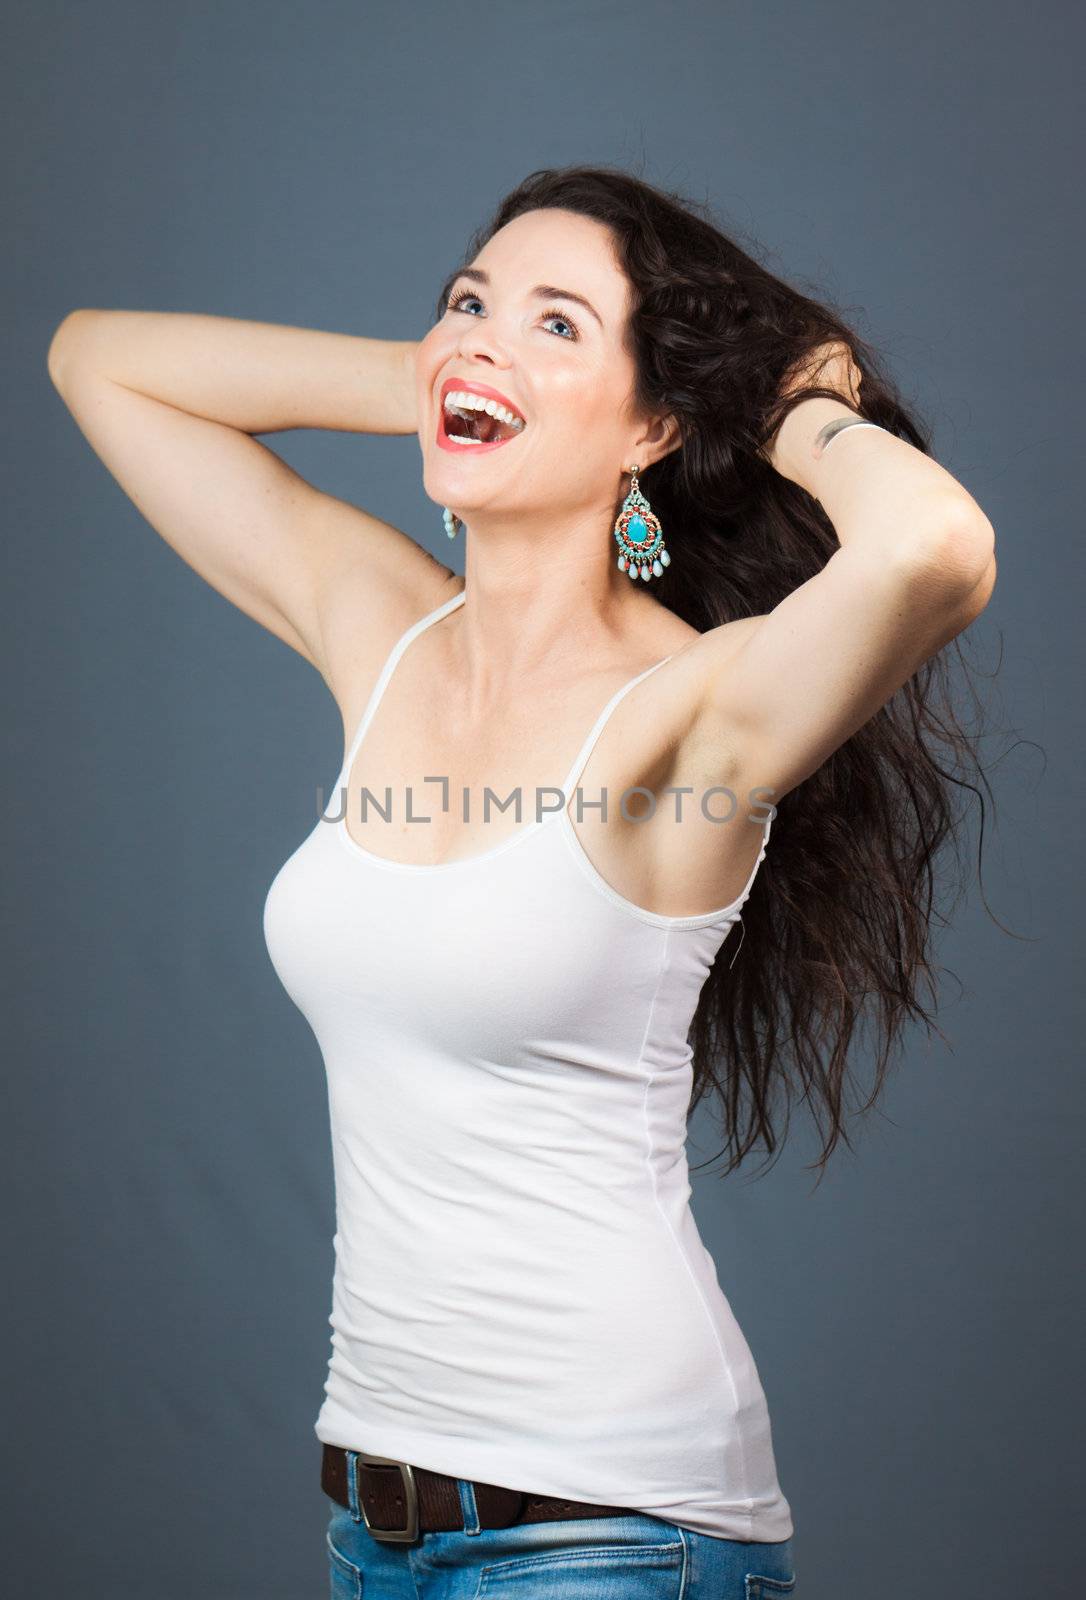 Beautiful laughing woman by Jaykayl